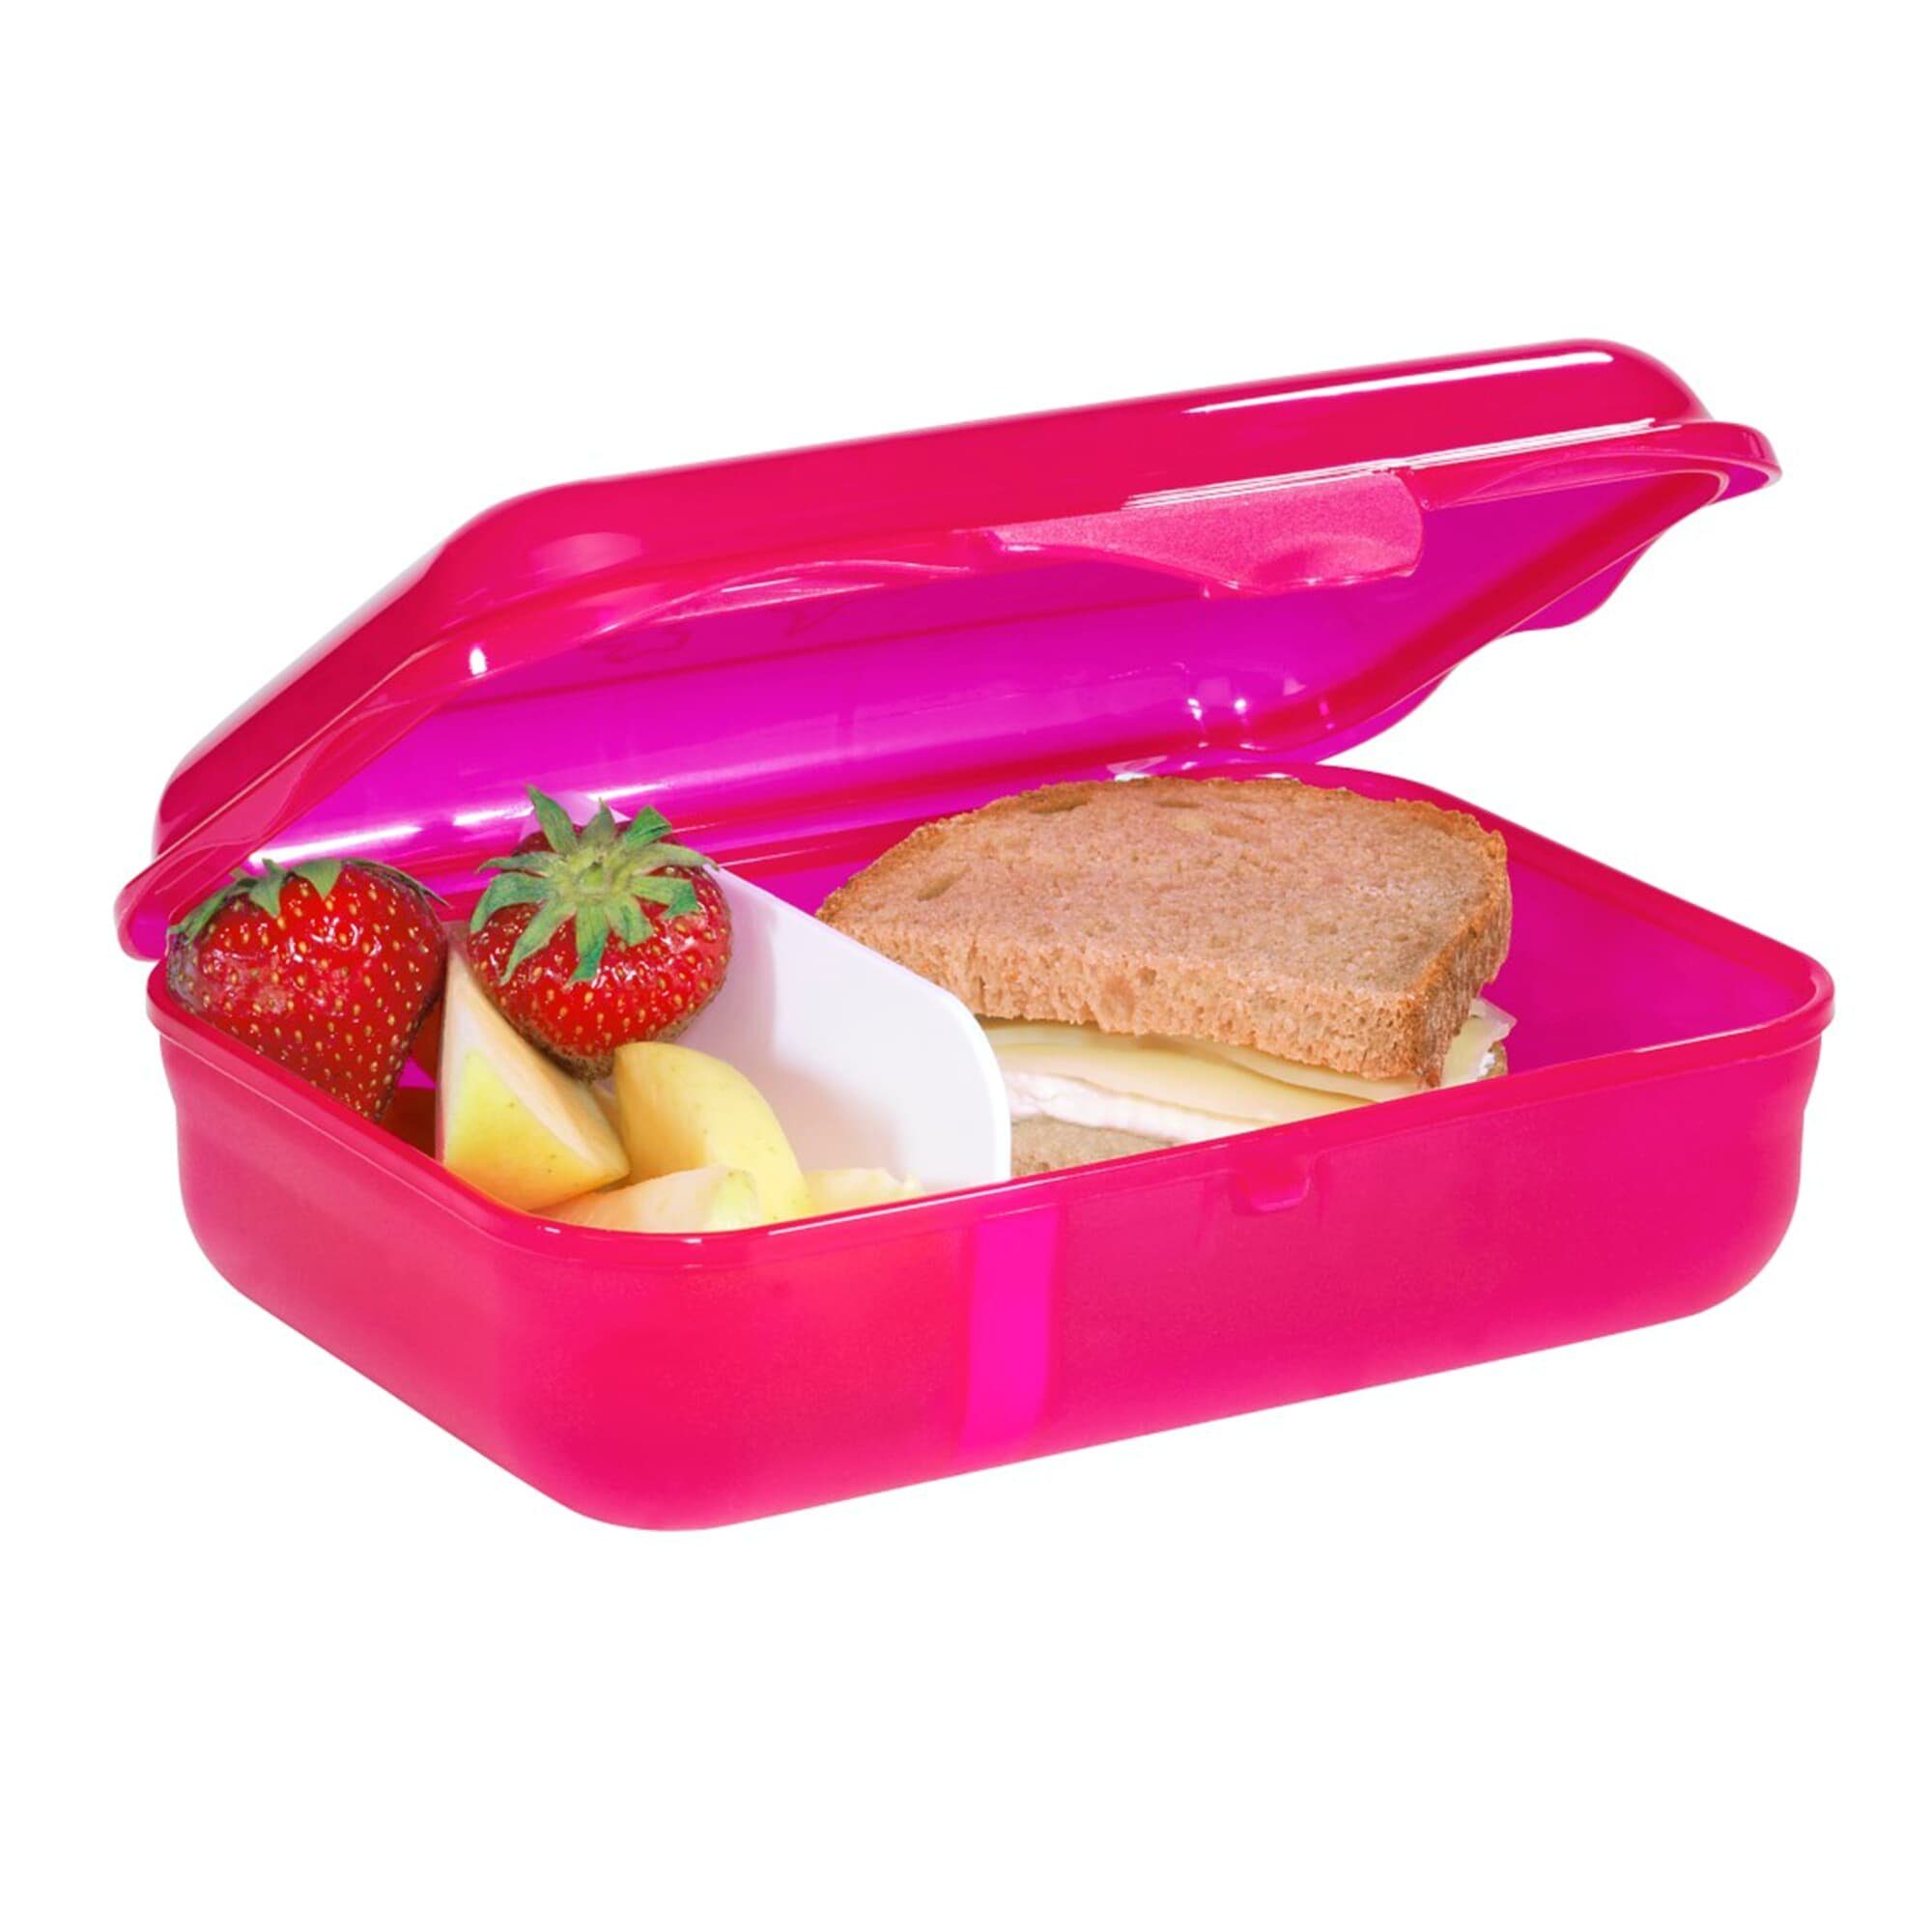 Step by Step Lunchbox mit Klickverschluss, Pink BPA-frei, (1-tlg) spülmaschinengeeignet, Freya, Fairy Kunststoff